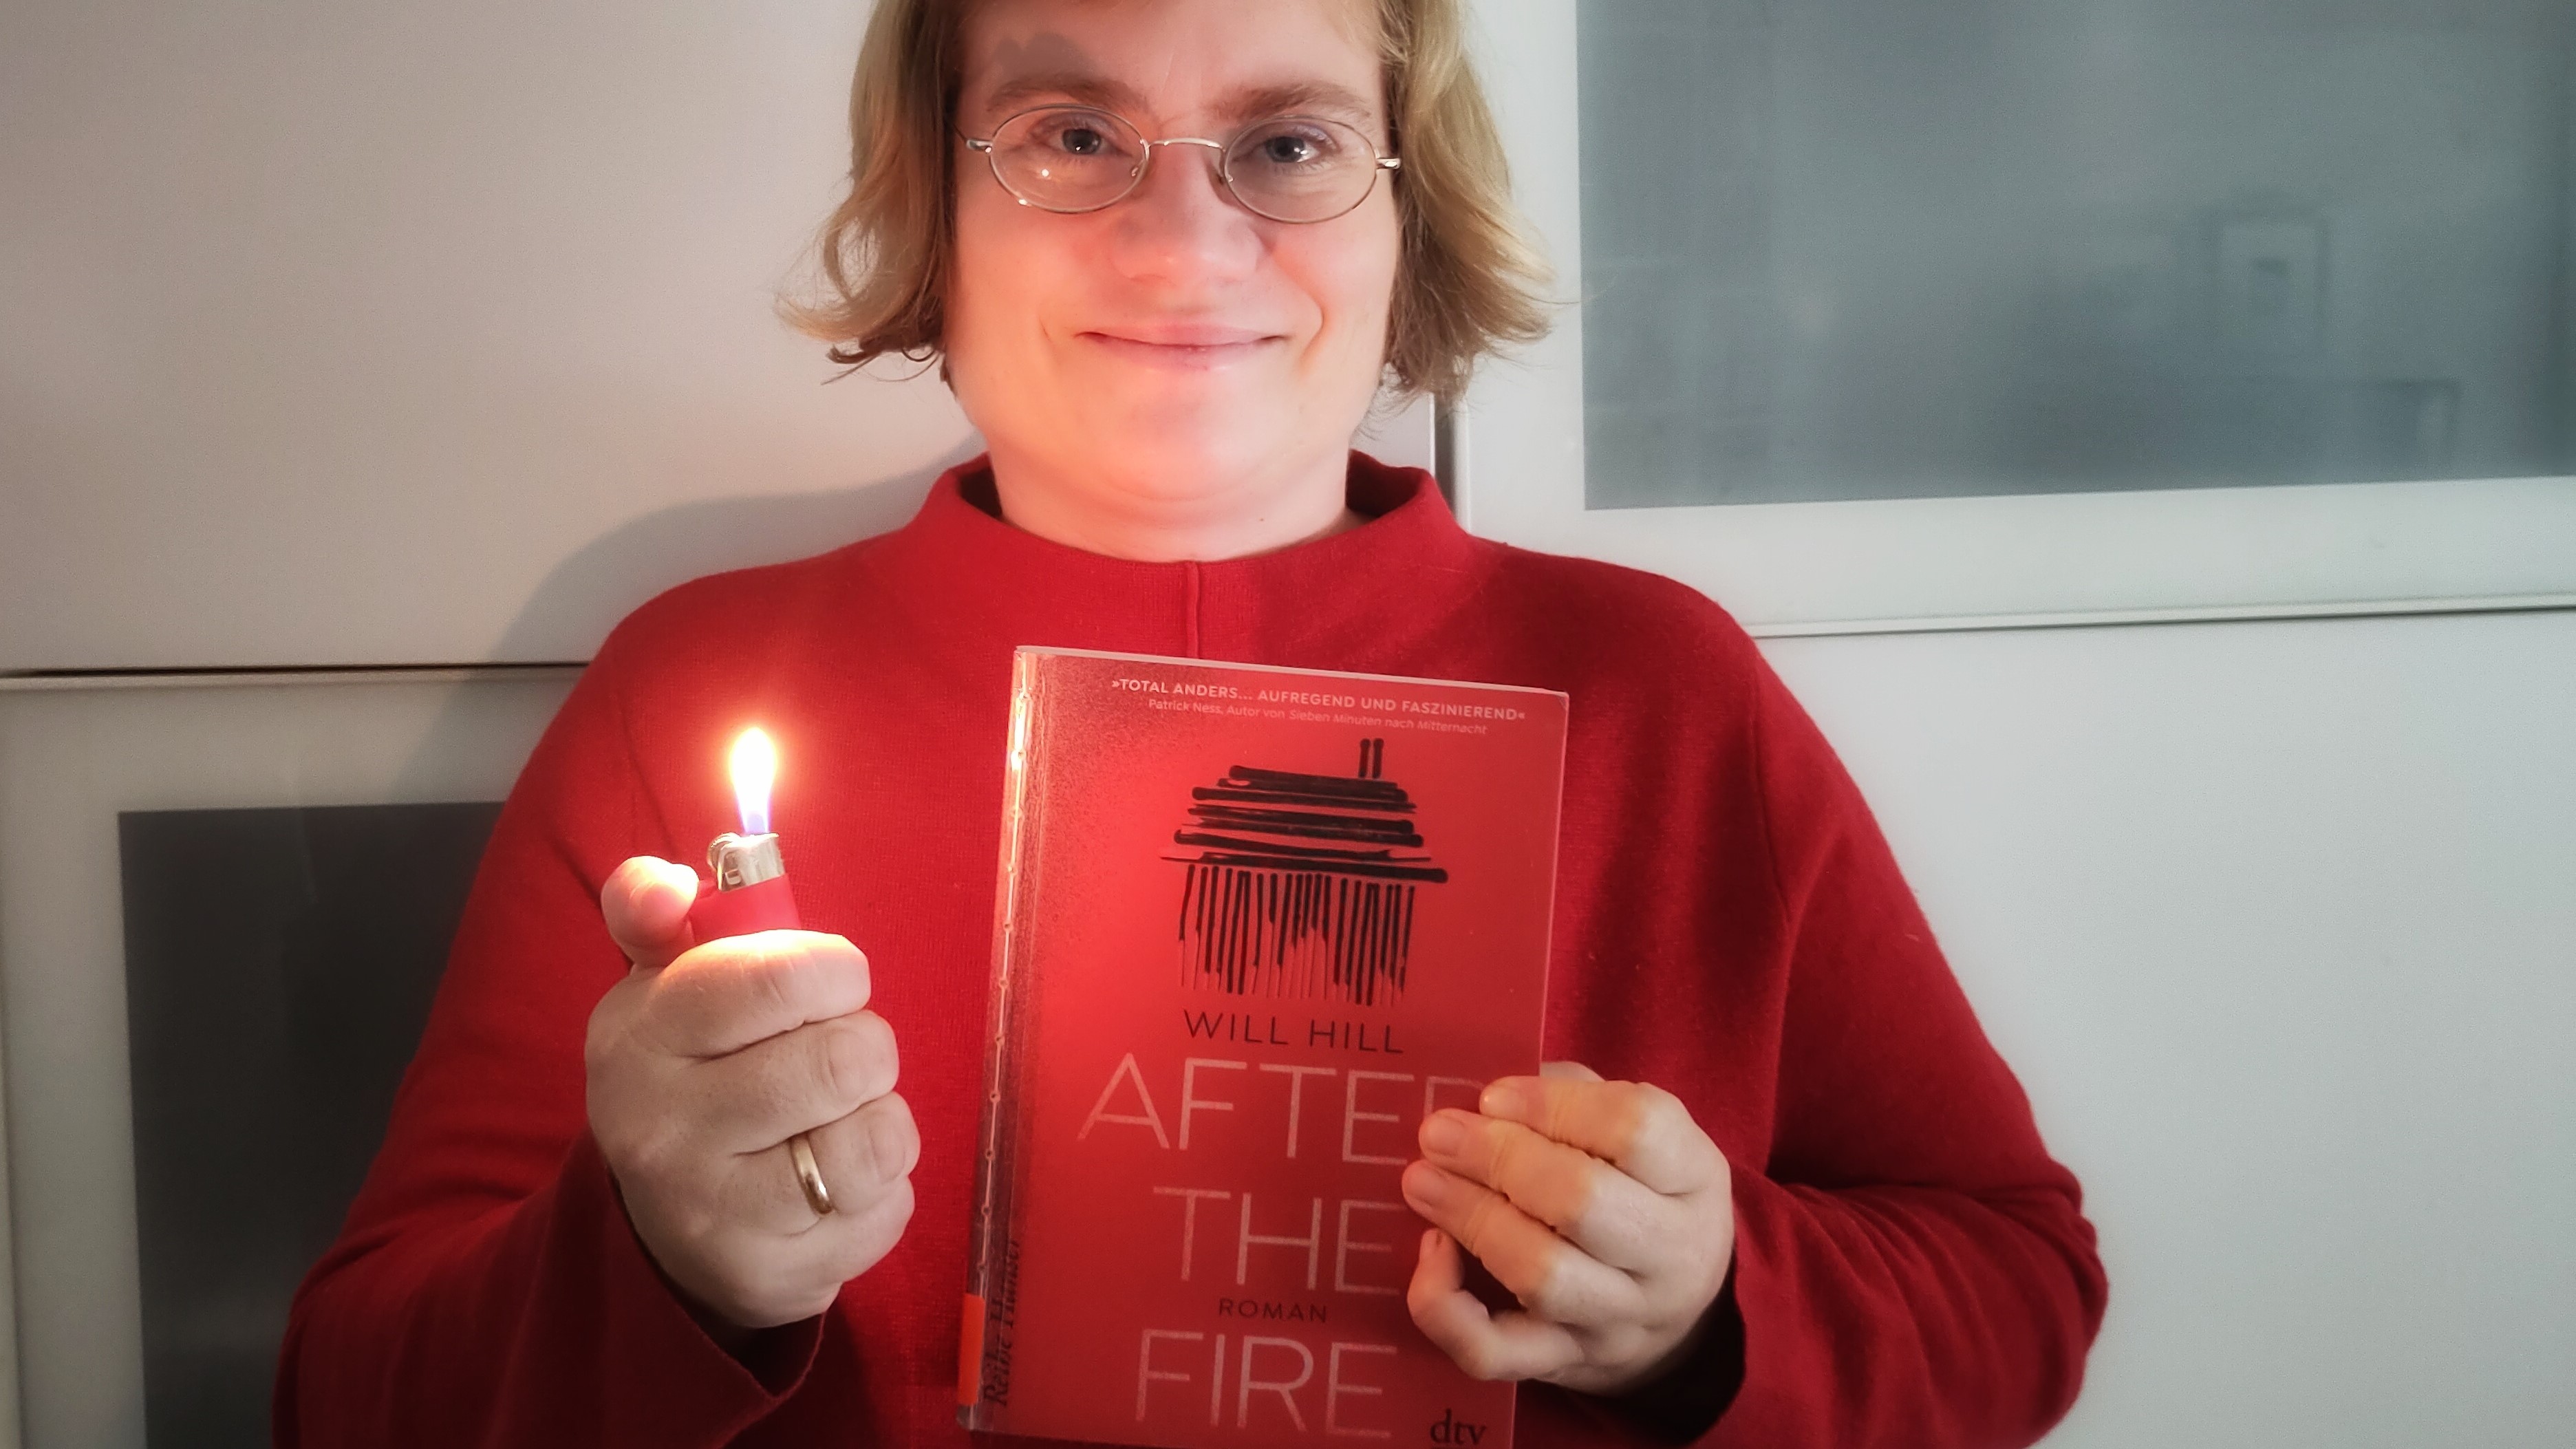 Anna Baumann hält das Buch "After the Fire" und ein Feuerzeug.